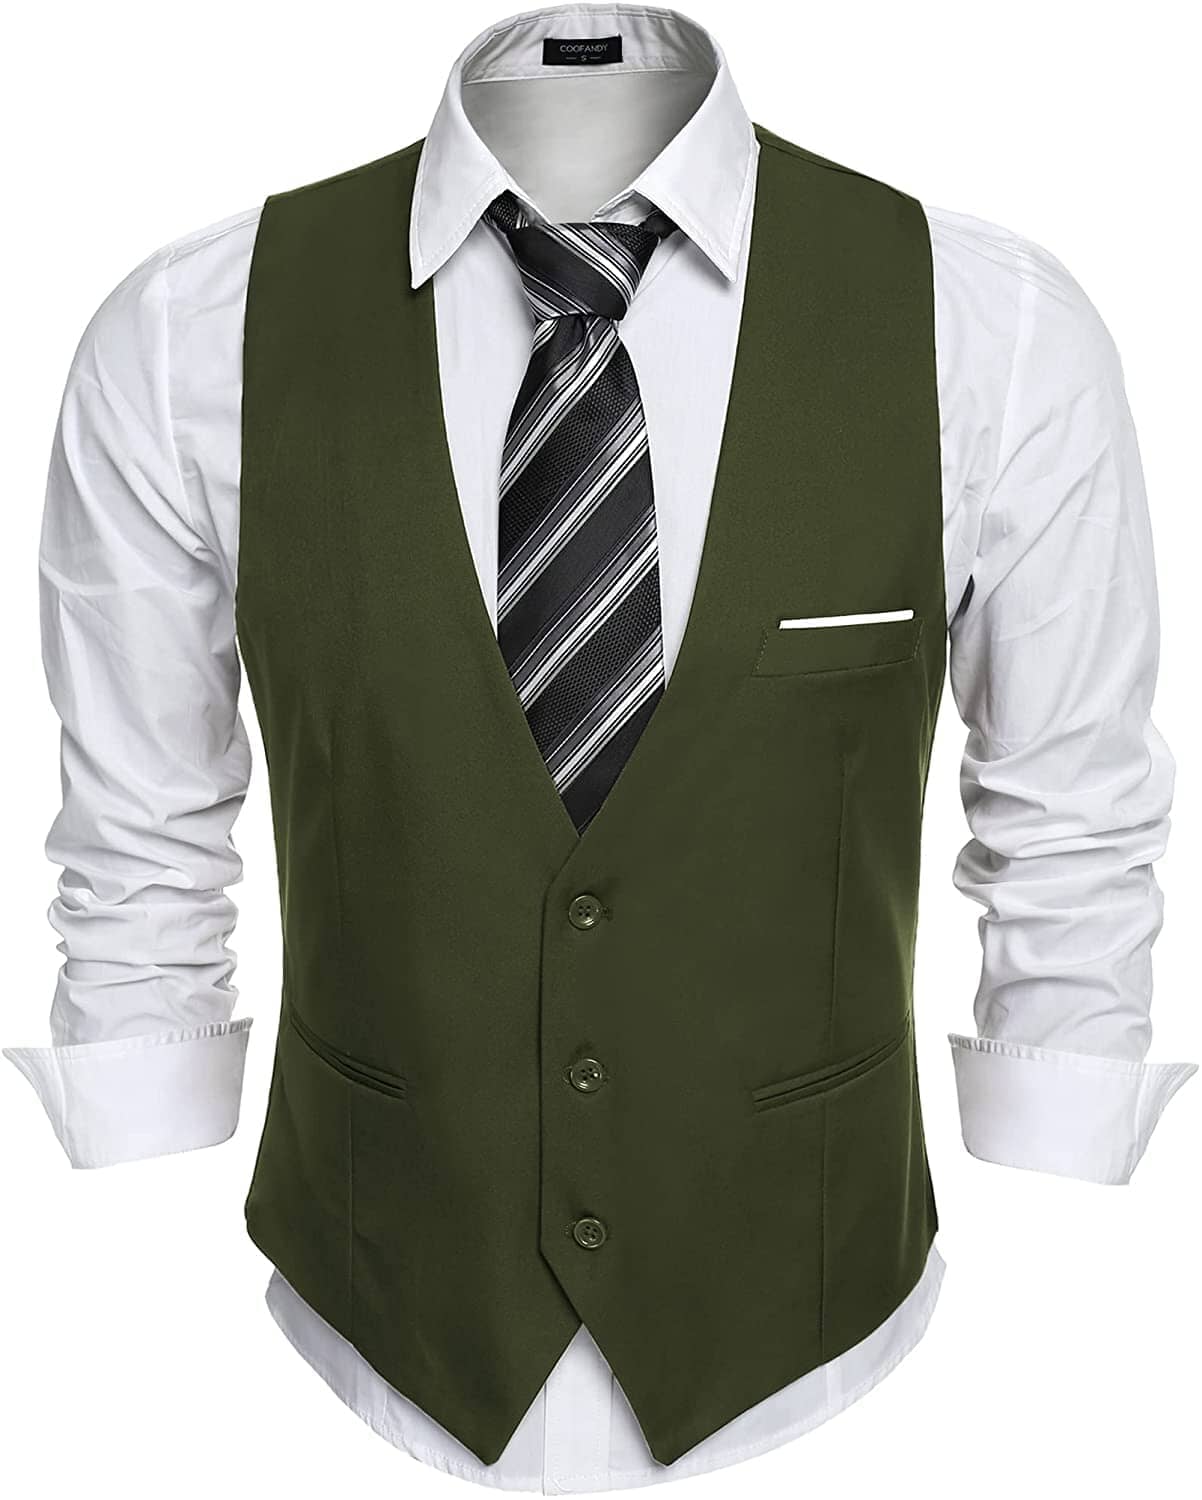 Slim Fit Jacket Vest - High Quality Material | Pockets | Adjustable ...